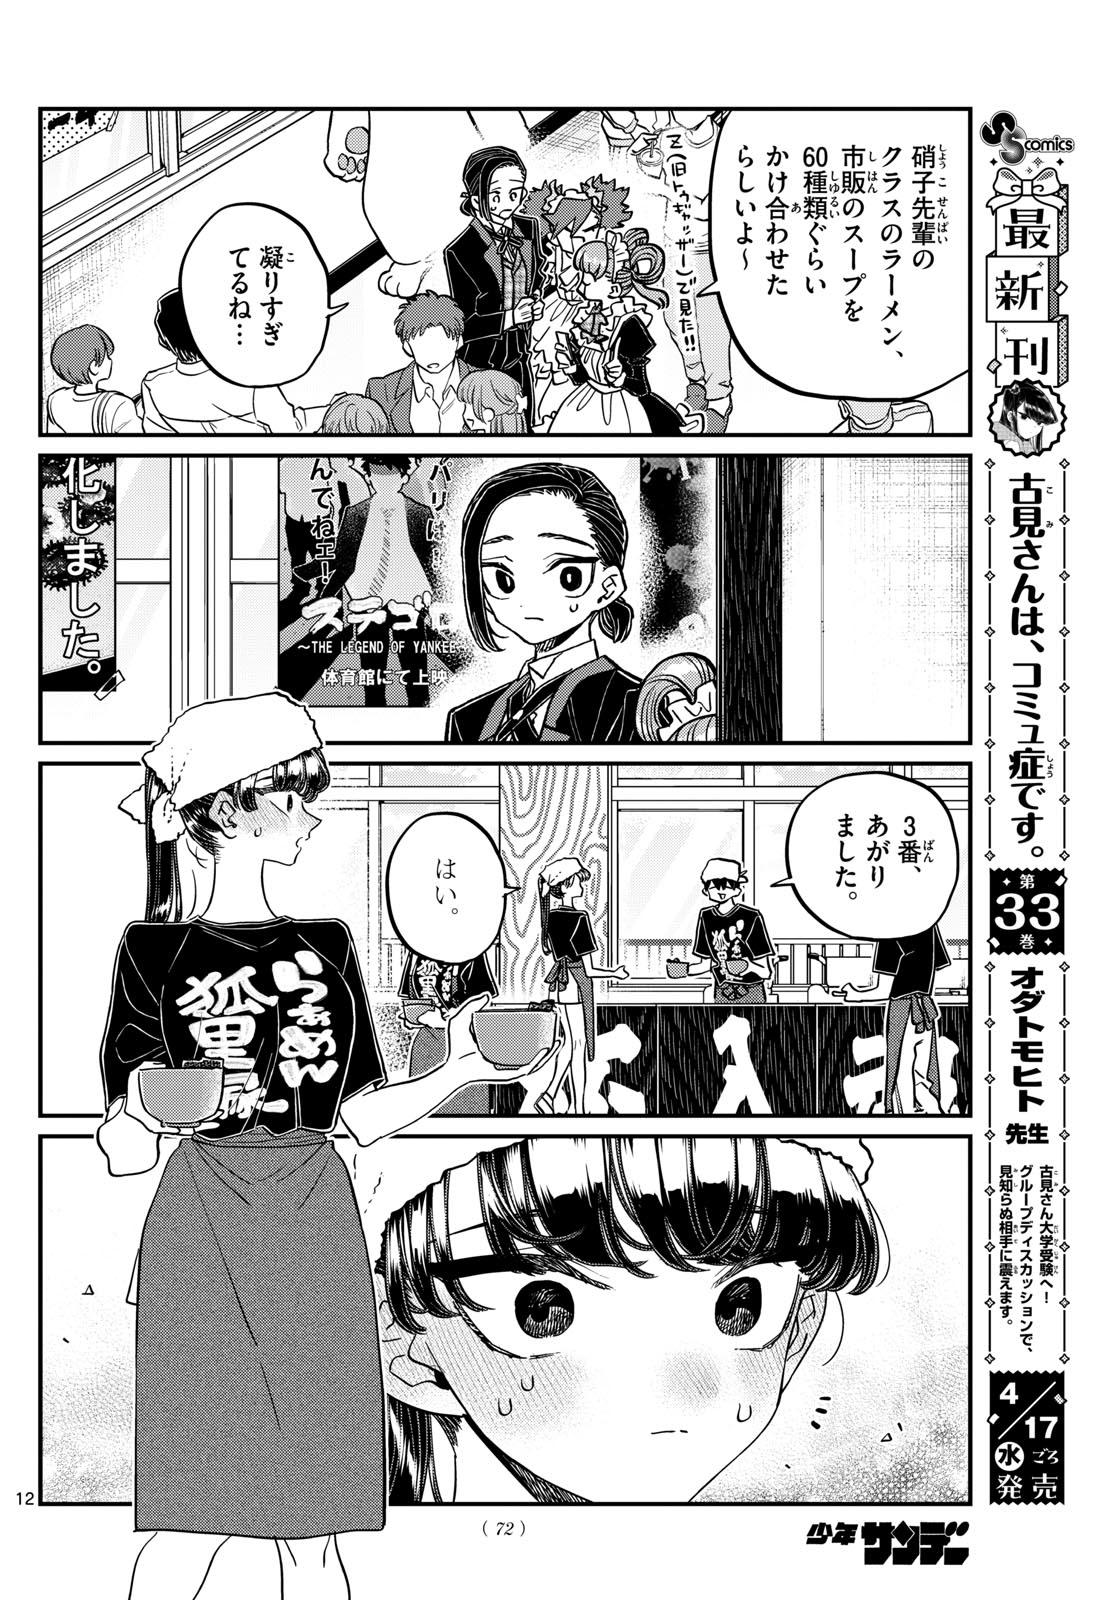 Komi-san wa Komyushou Desu - Chapter 451 - Page 12